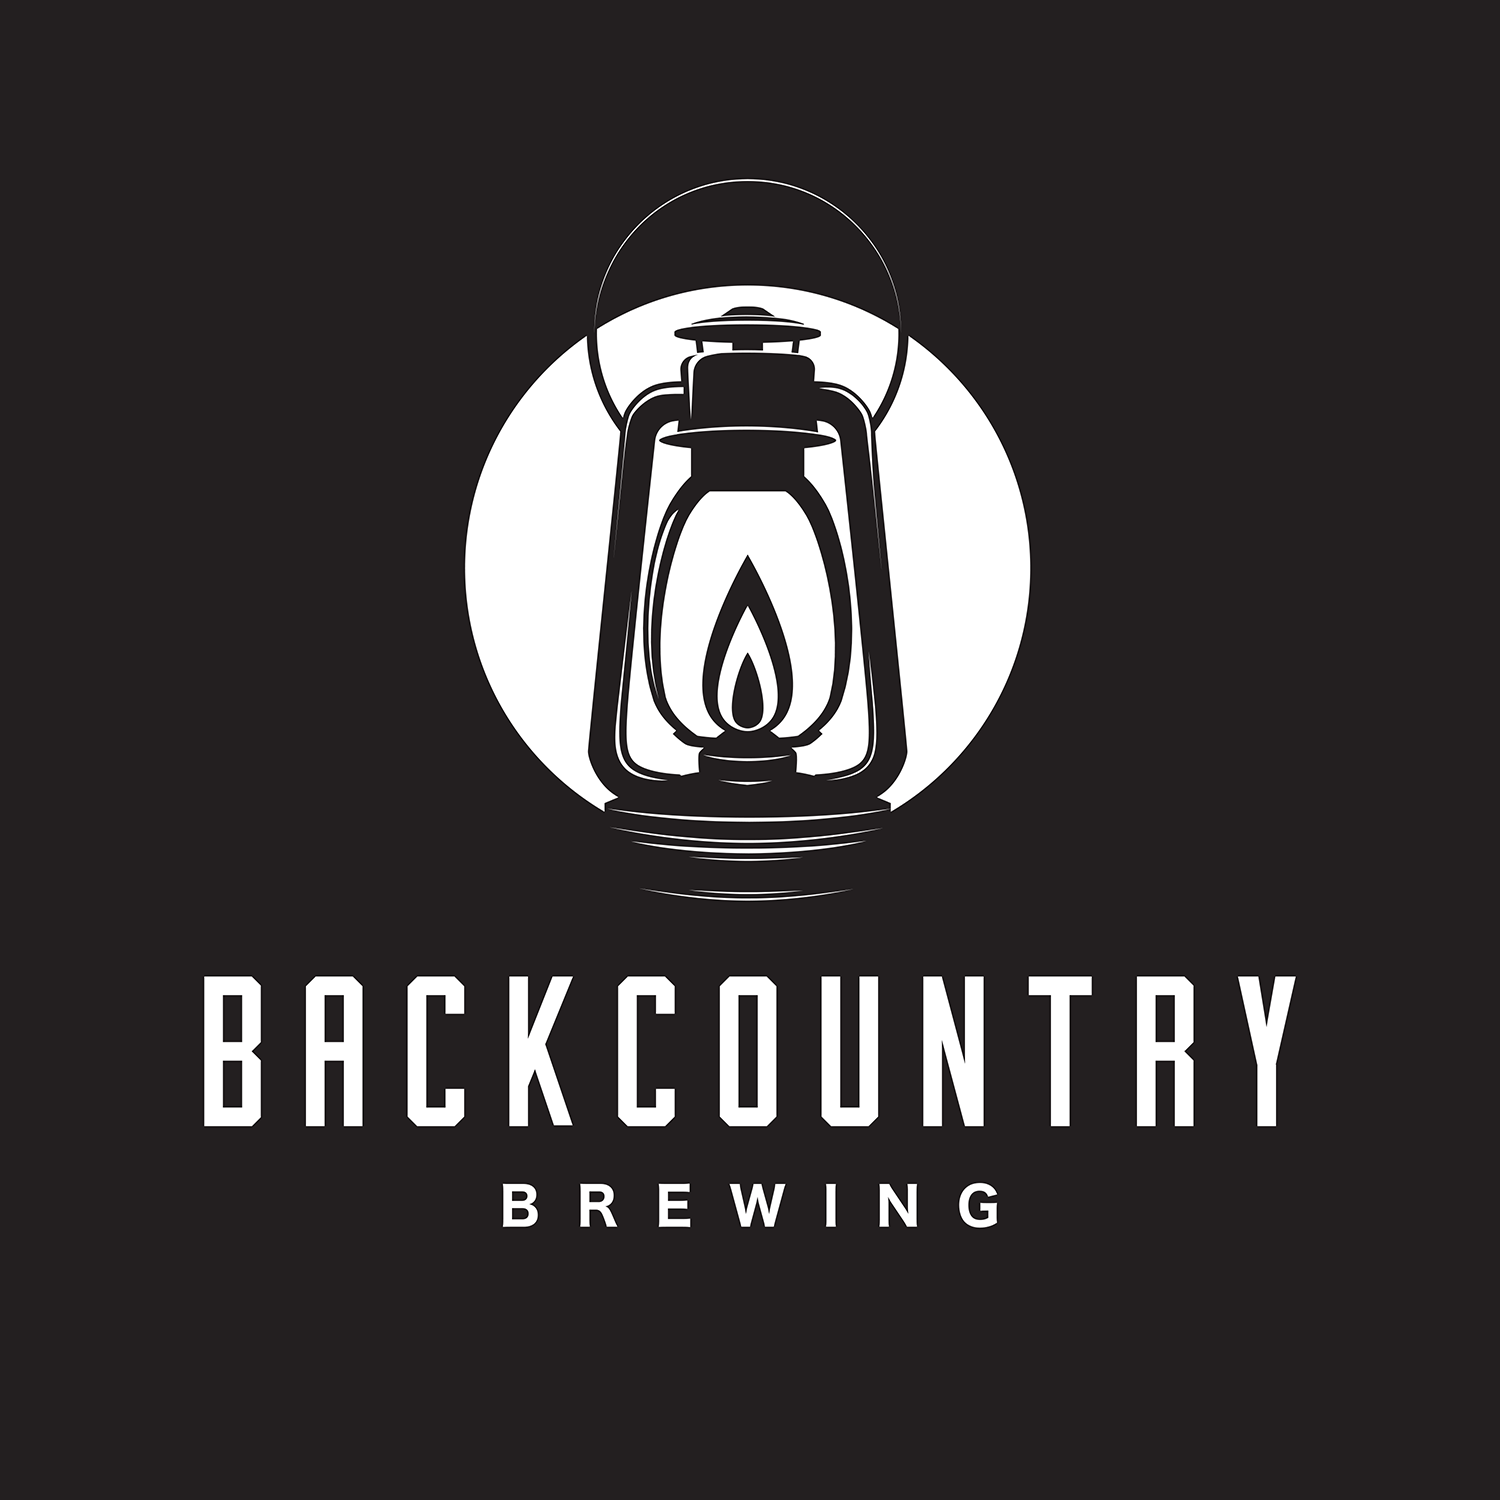 Backcountry Brewing logo